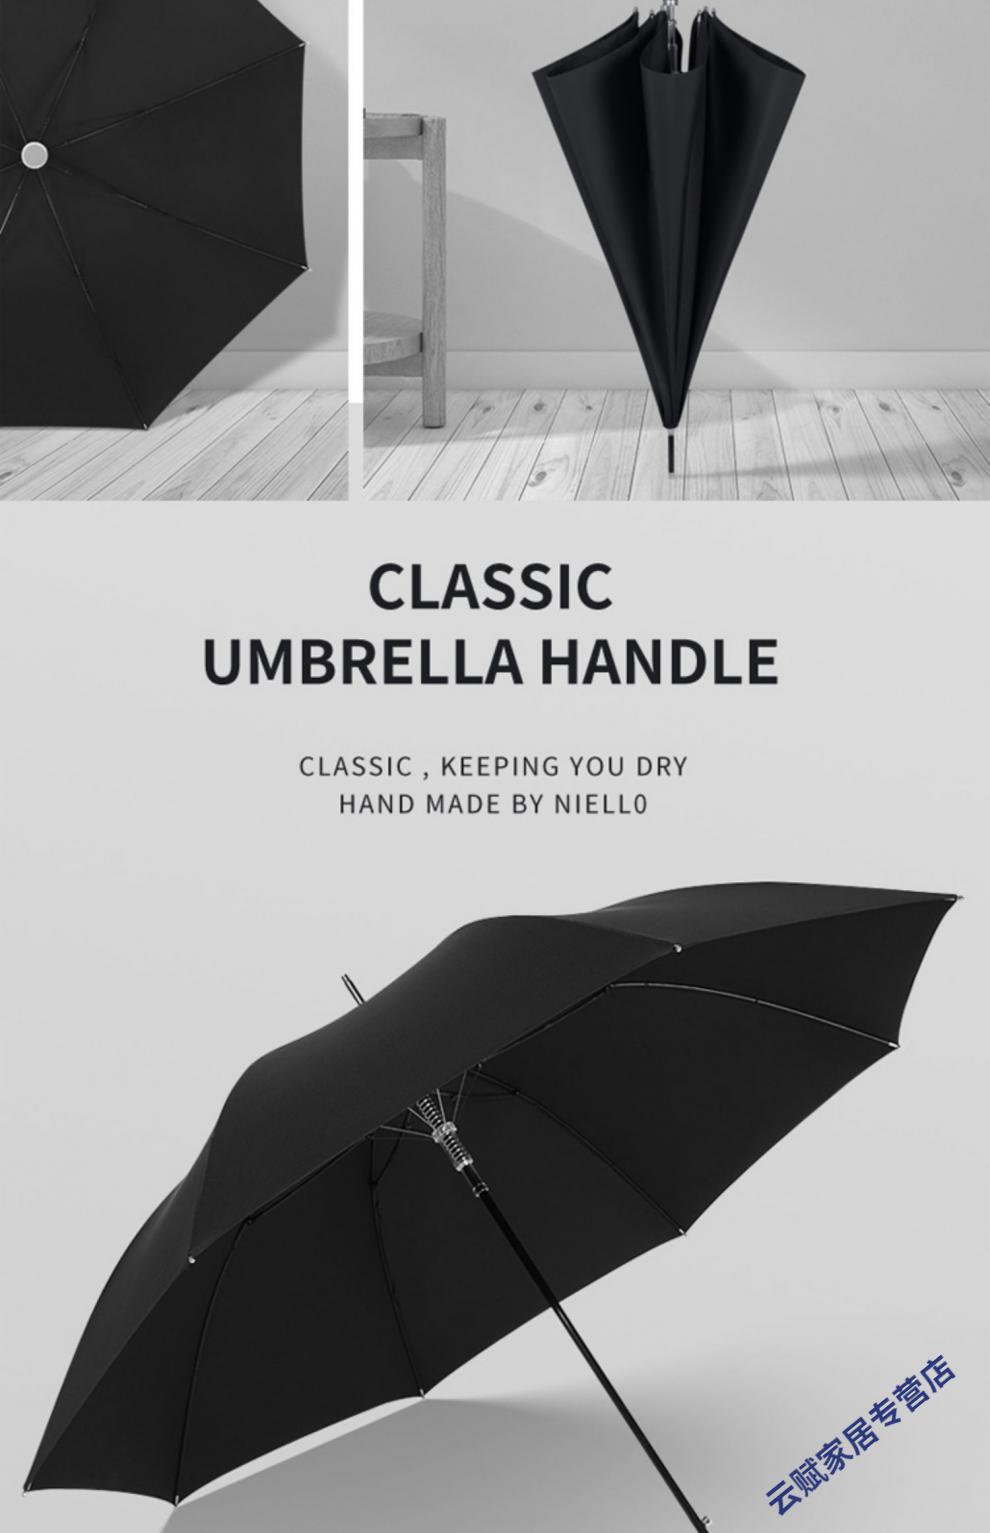 劳斯莱斯雨伞图片价值图片